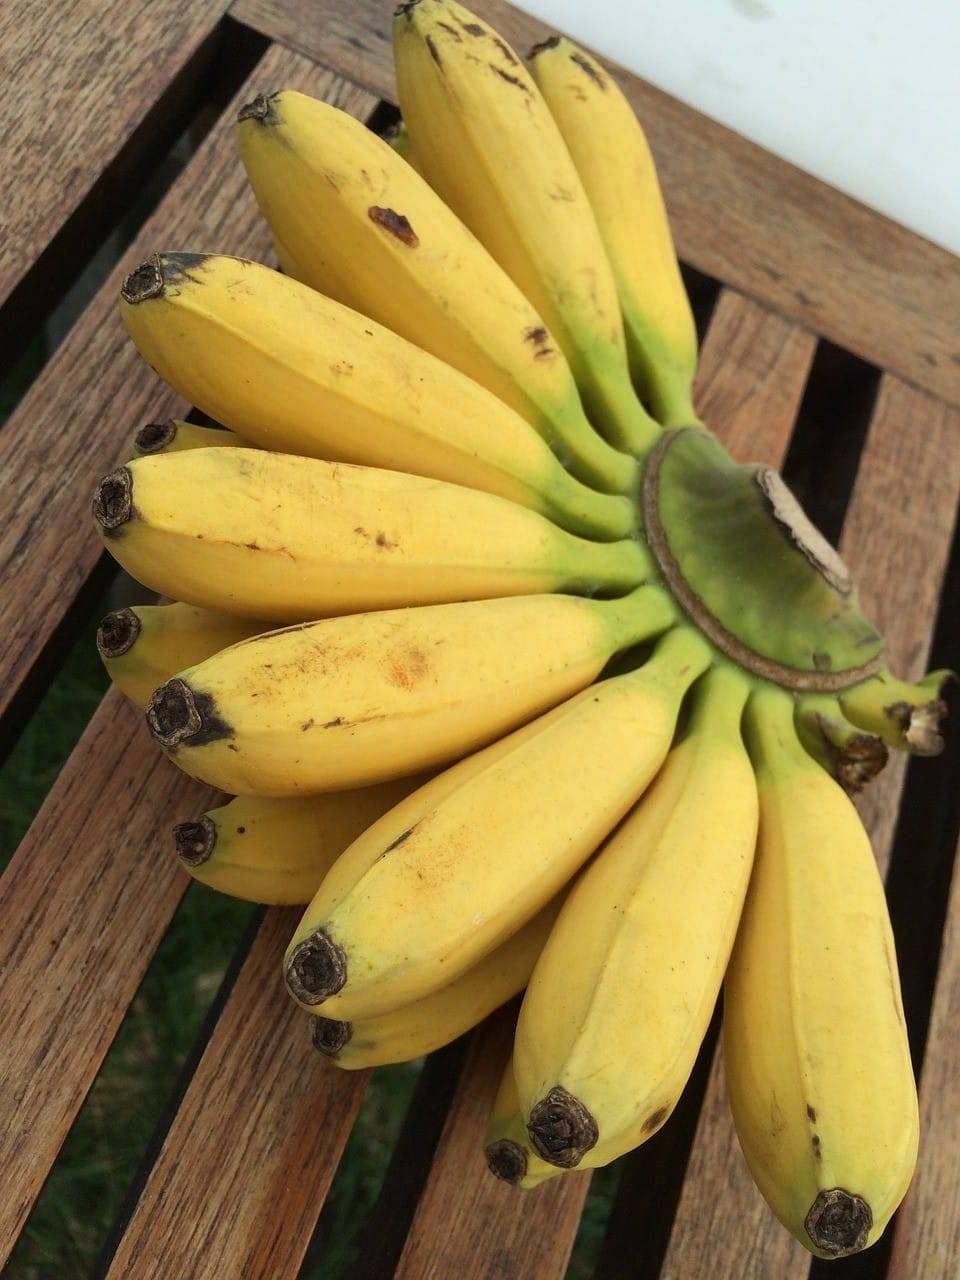 Как правильно хранить бананы, чтобы они не почернели?